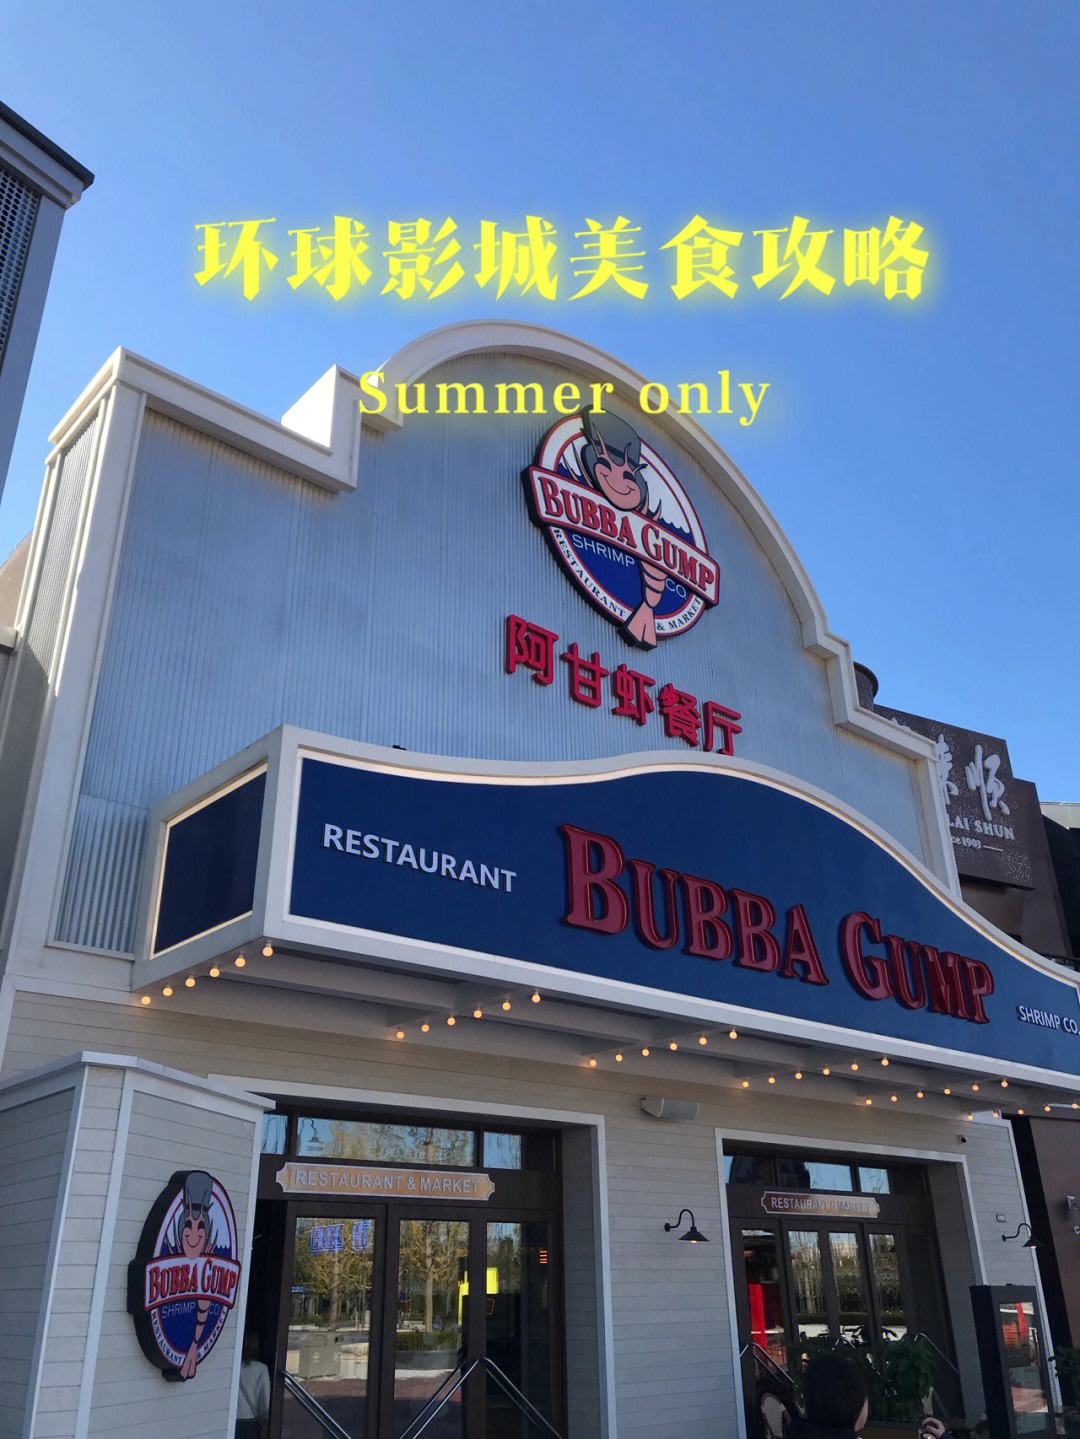 环球影城阿甘虾餐厅图片